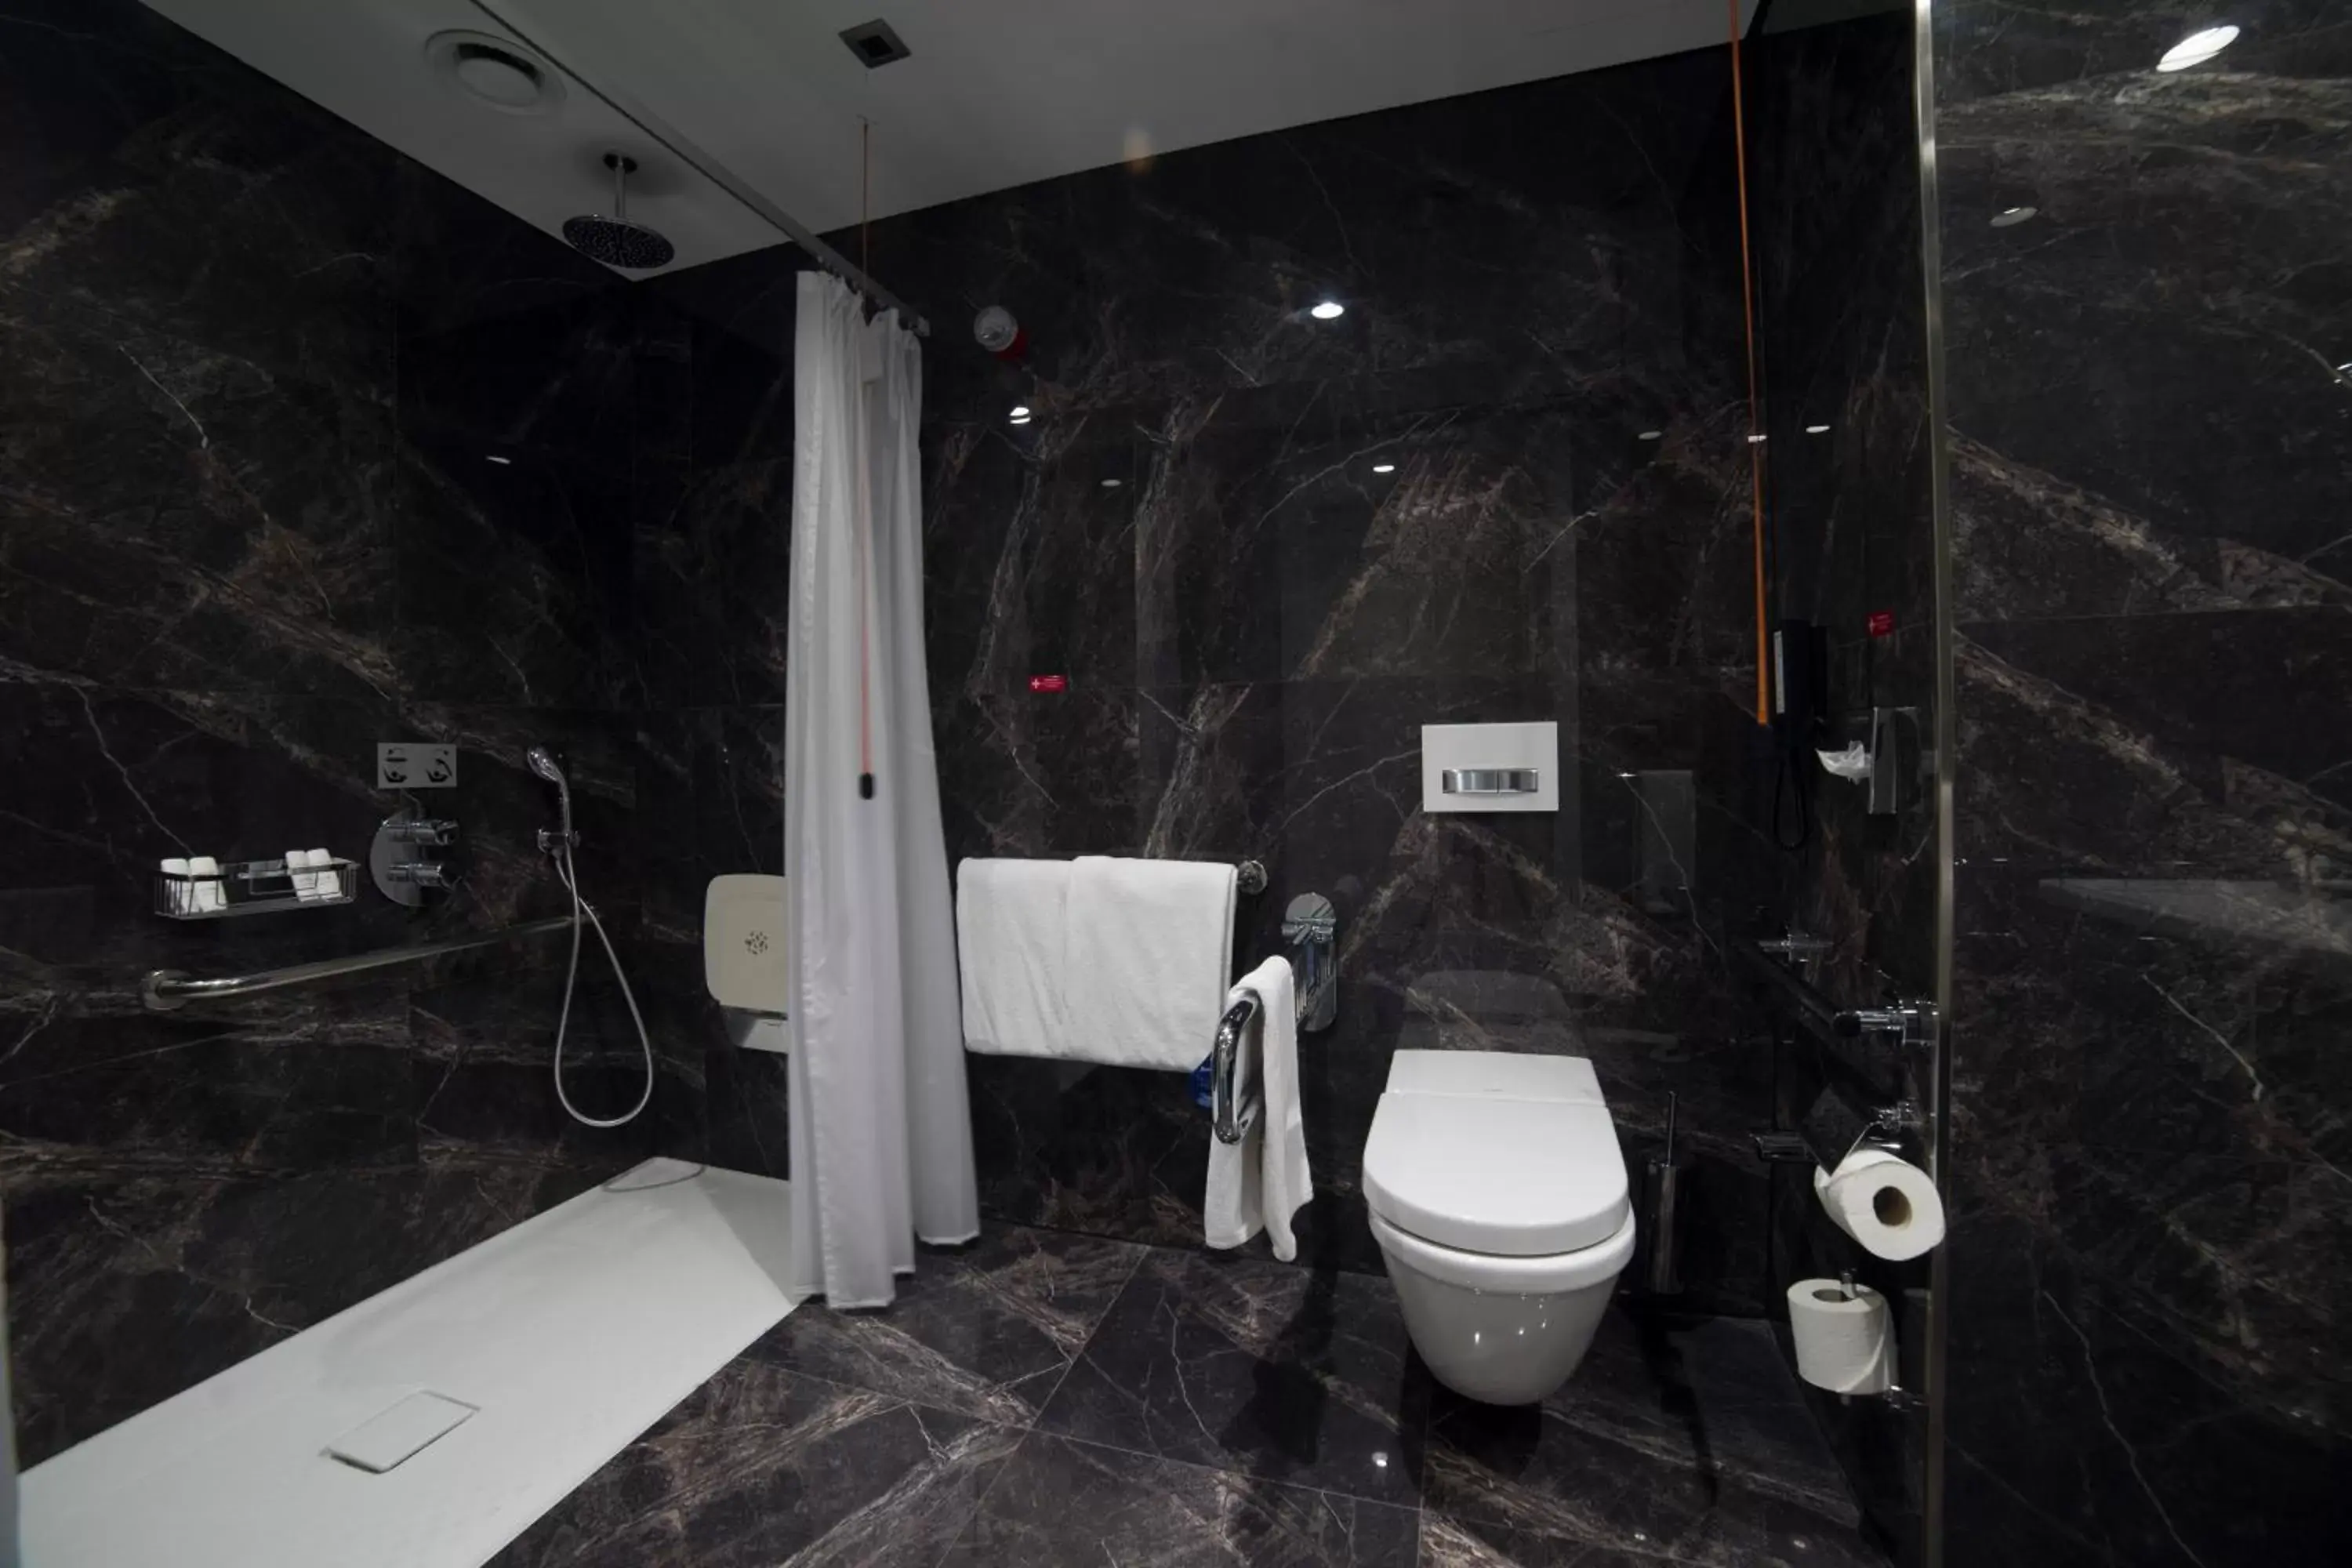 Shower, Bathroom in Radisson Blu Hotel, Kayseri